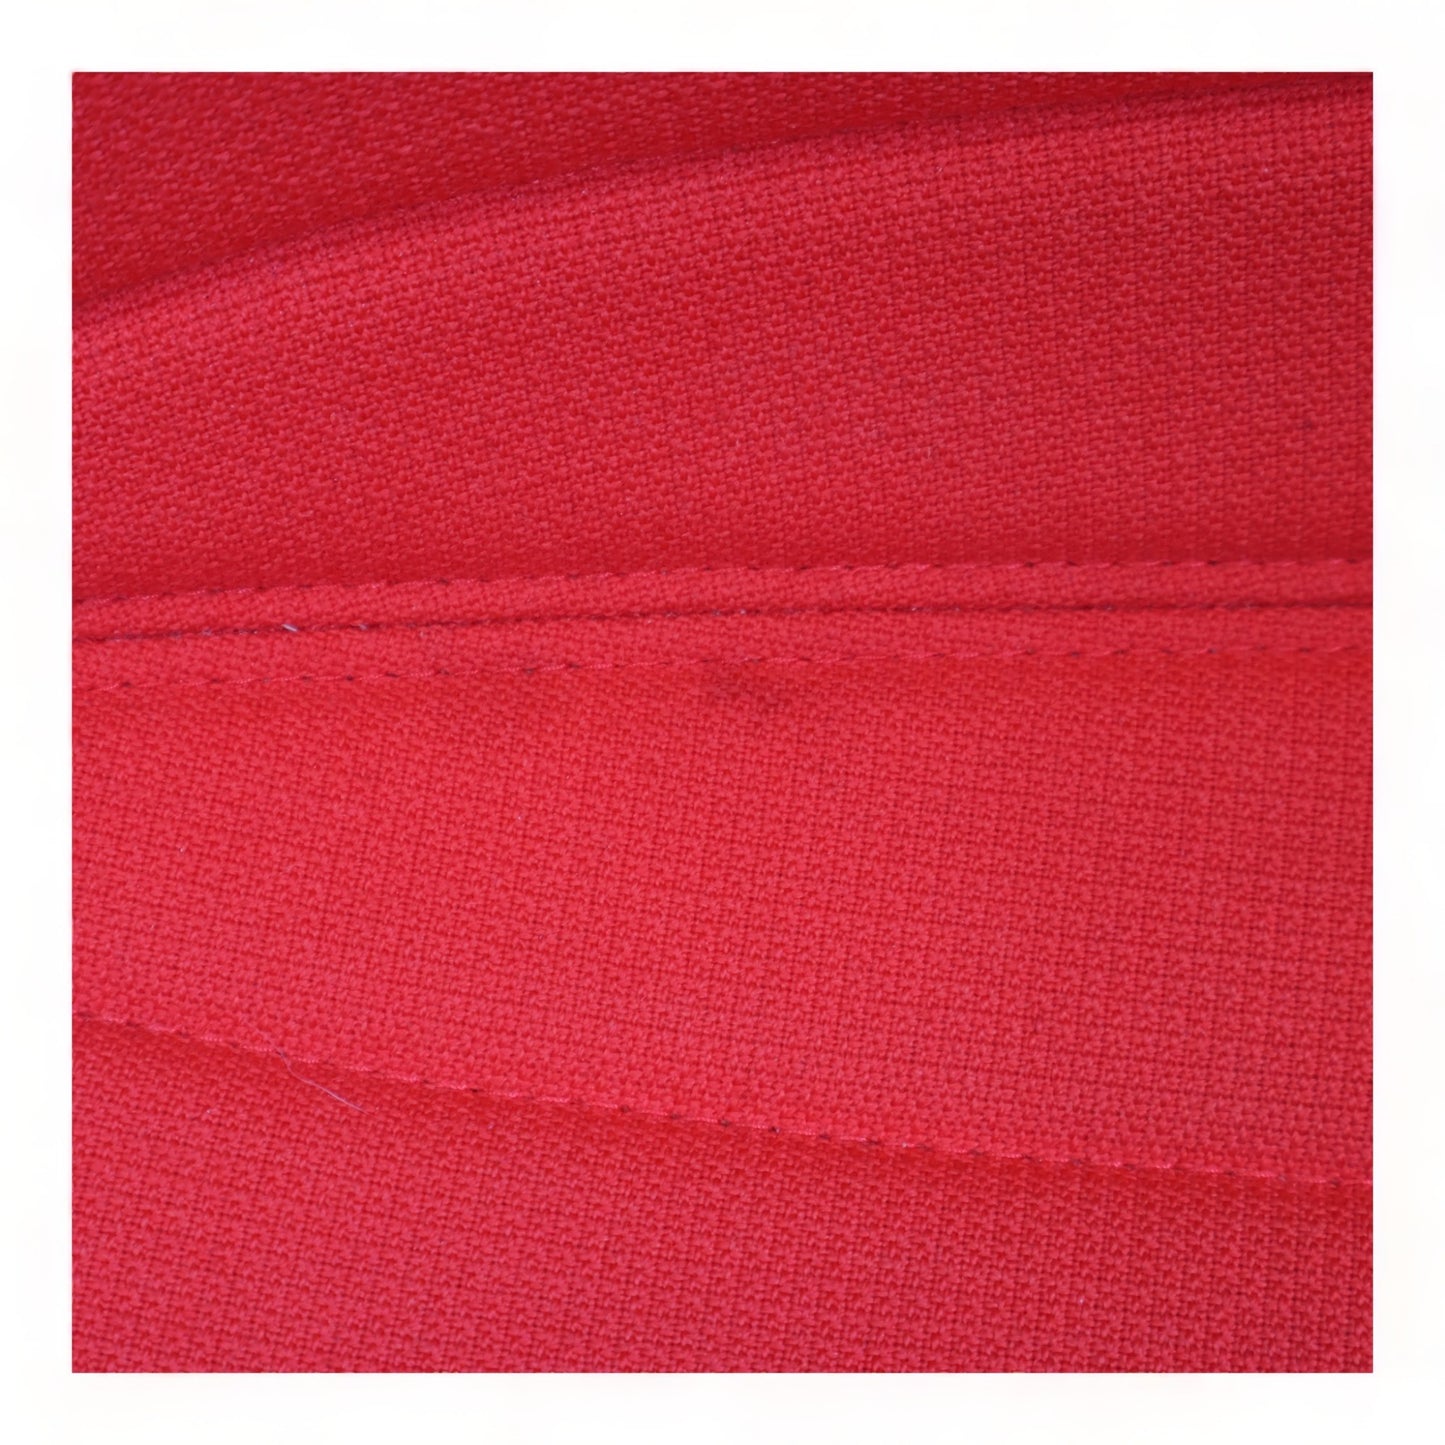 Nyrenset | Arper Catifa stol i fargen rød